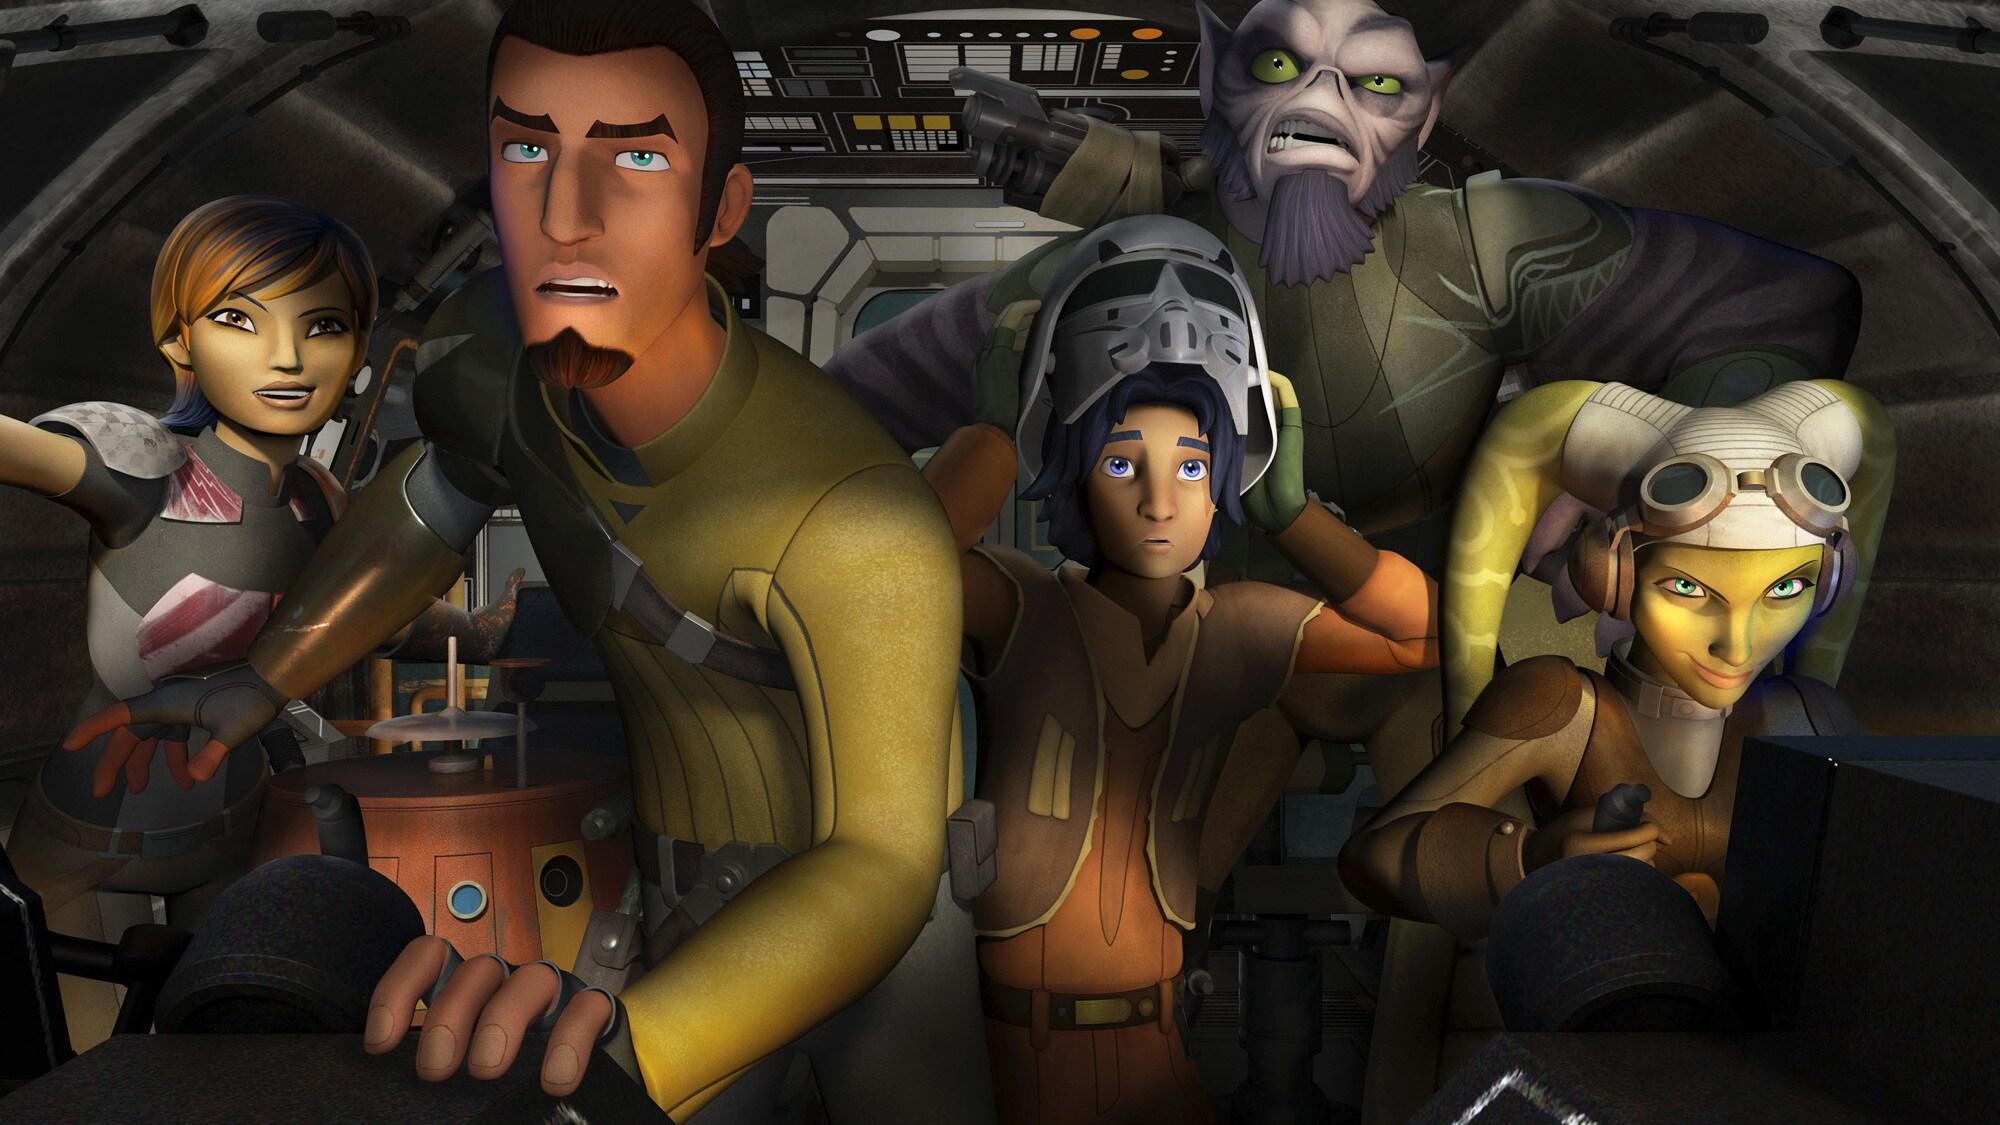 Star Wars Rebels: Spark of Rebellion Premieres Friday, October 3 on Disney Channel